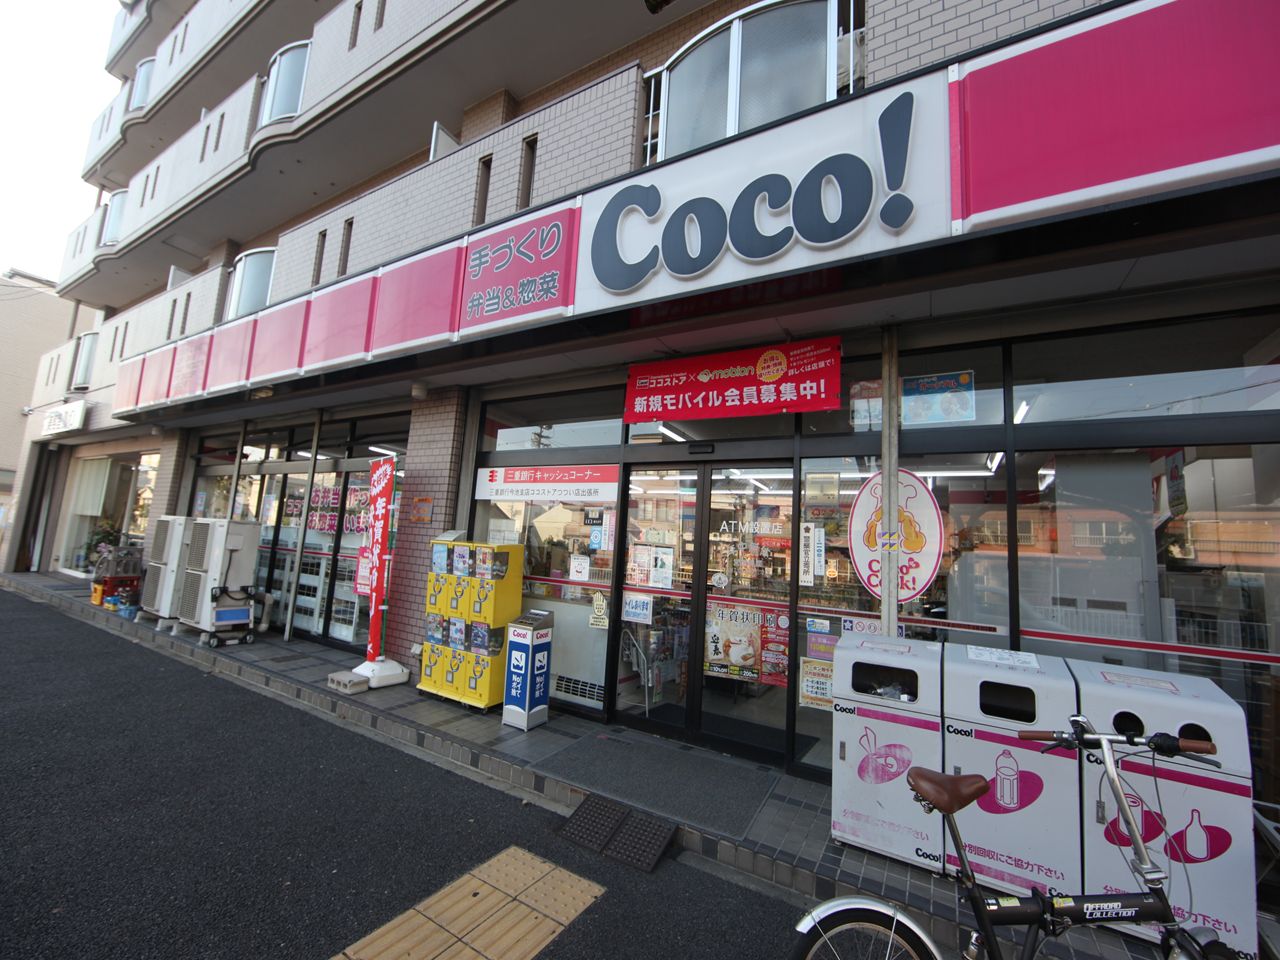 Convenience store. 114m to the Coco store Tsutsui store (convenience store)